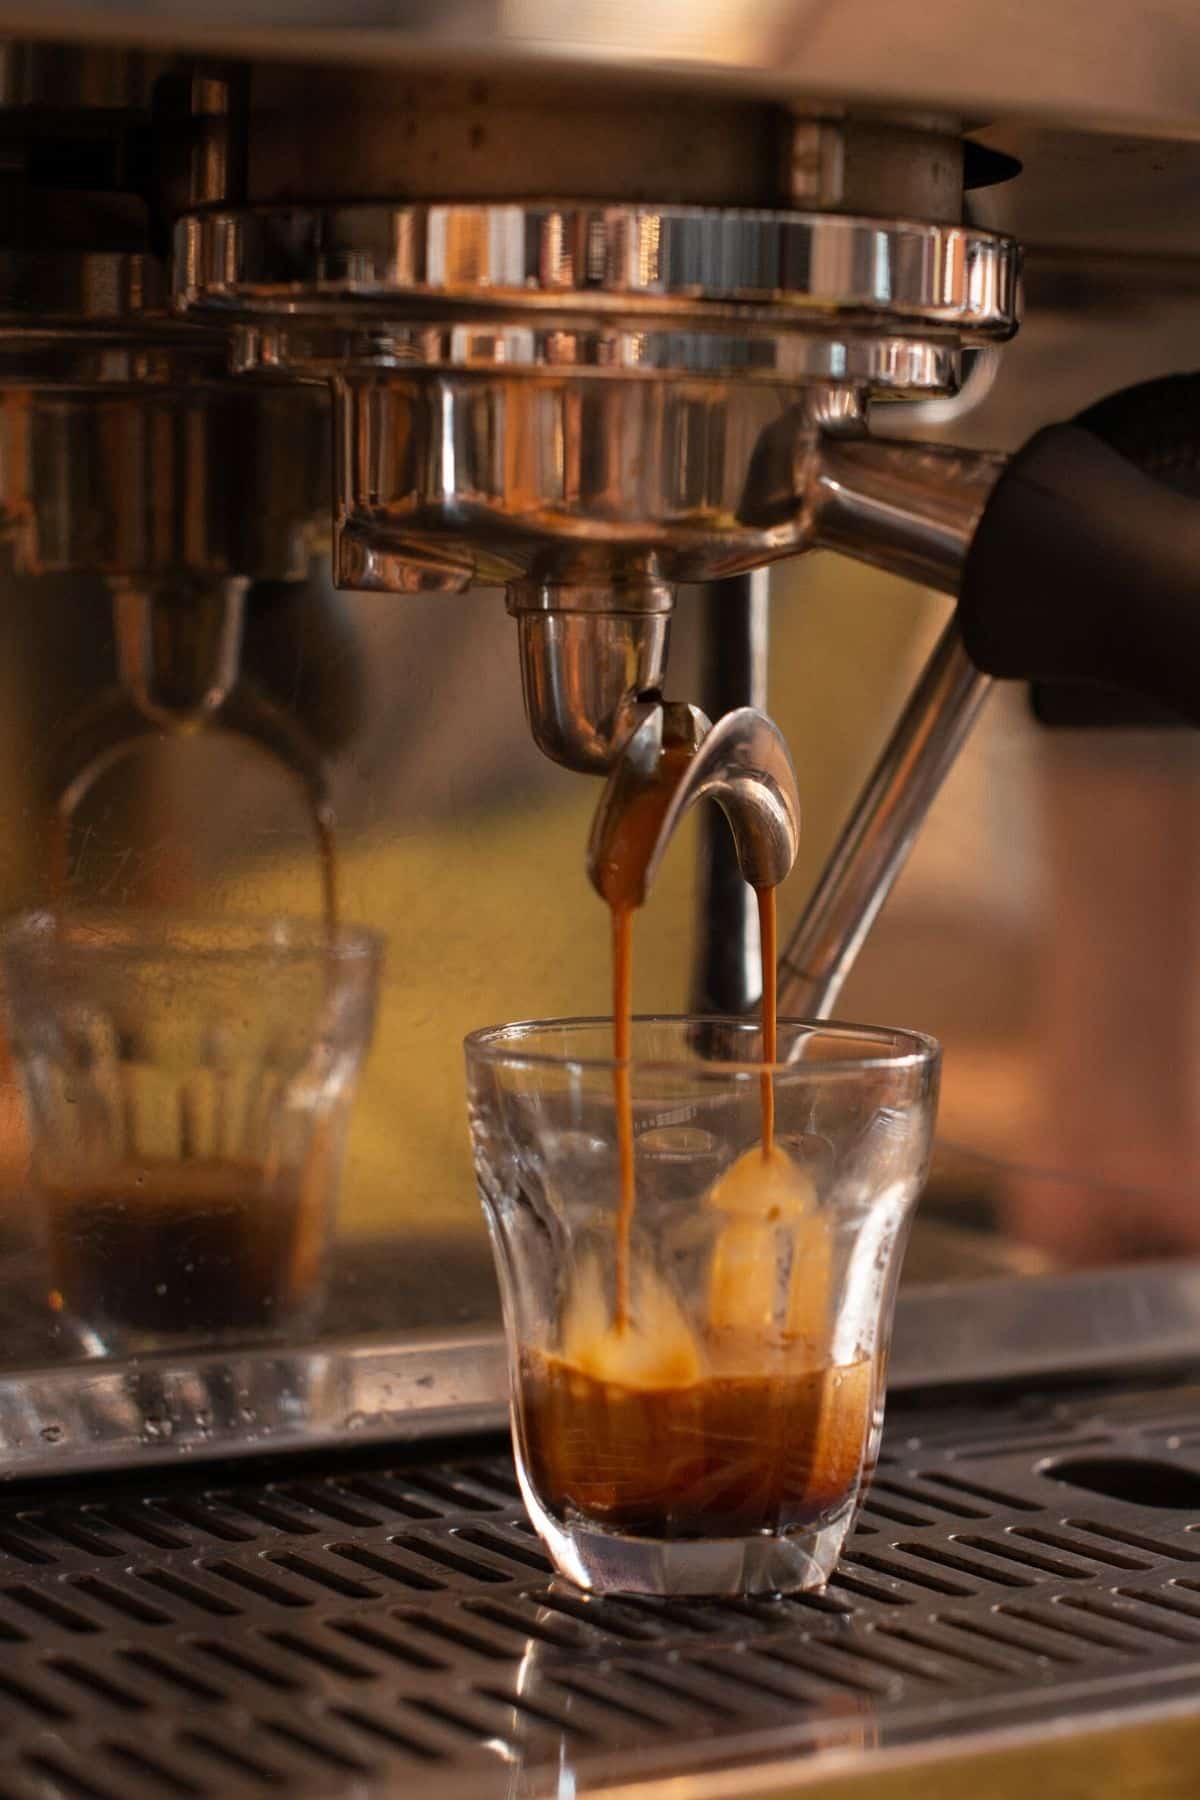 brewing espresso from a machine.